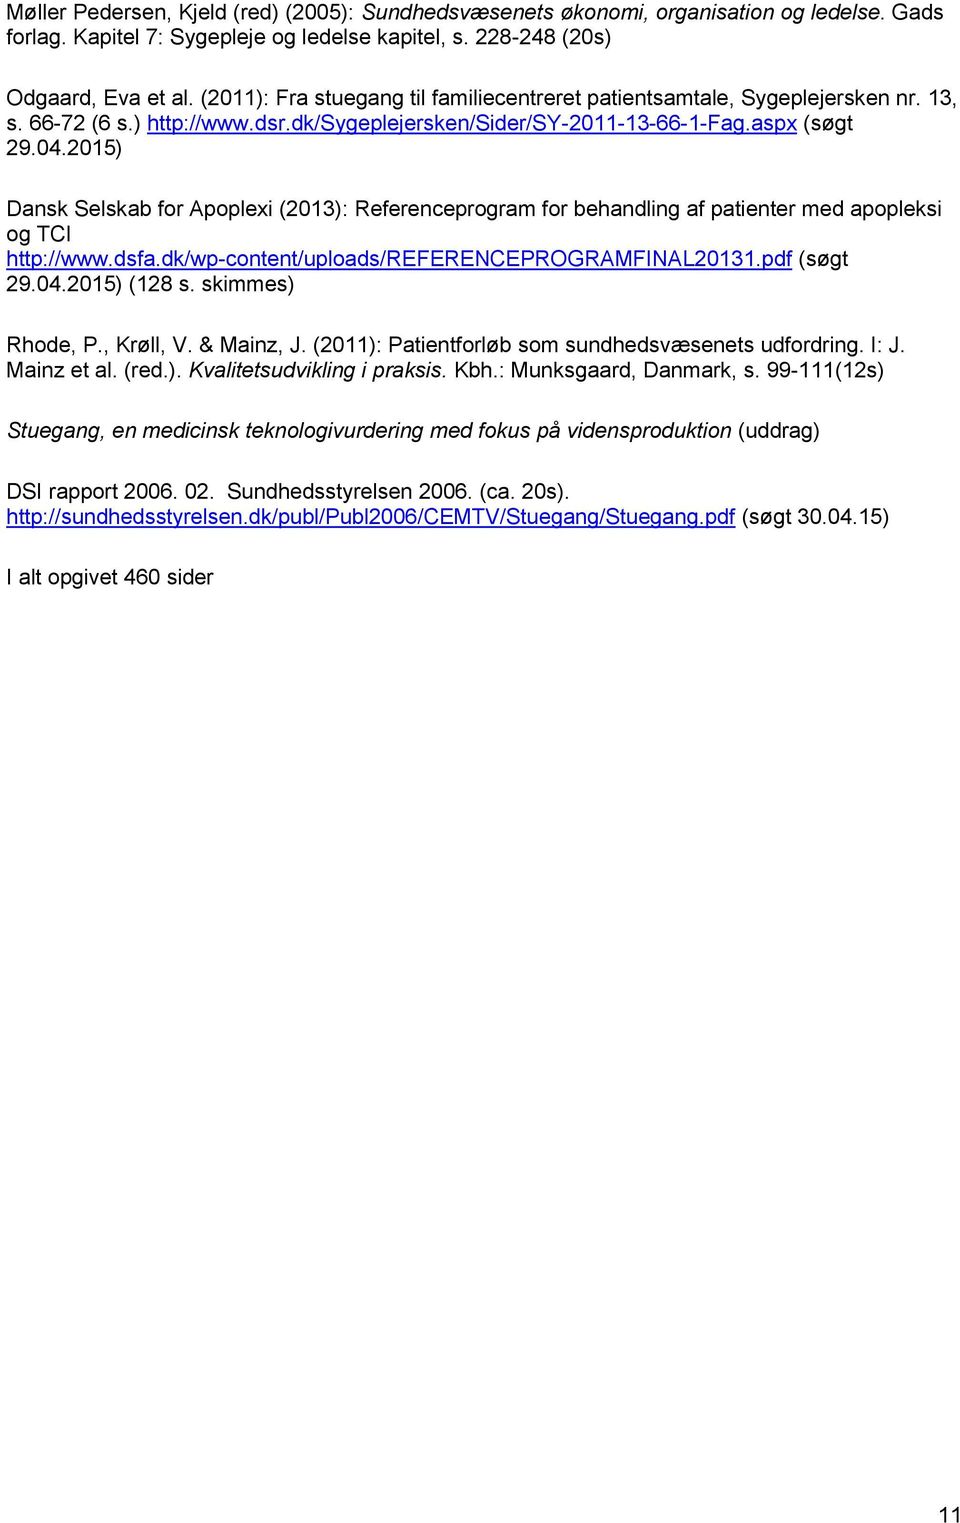 2015) Dansk Selskab for Apoplexi (2013): Referenceprogram for behandling af patienter med apopleksi og TCI http://www.dsfa.dk/wp-content/uploads/referenceprogramfinal20131.pdf (søgt 29.04.